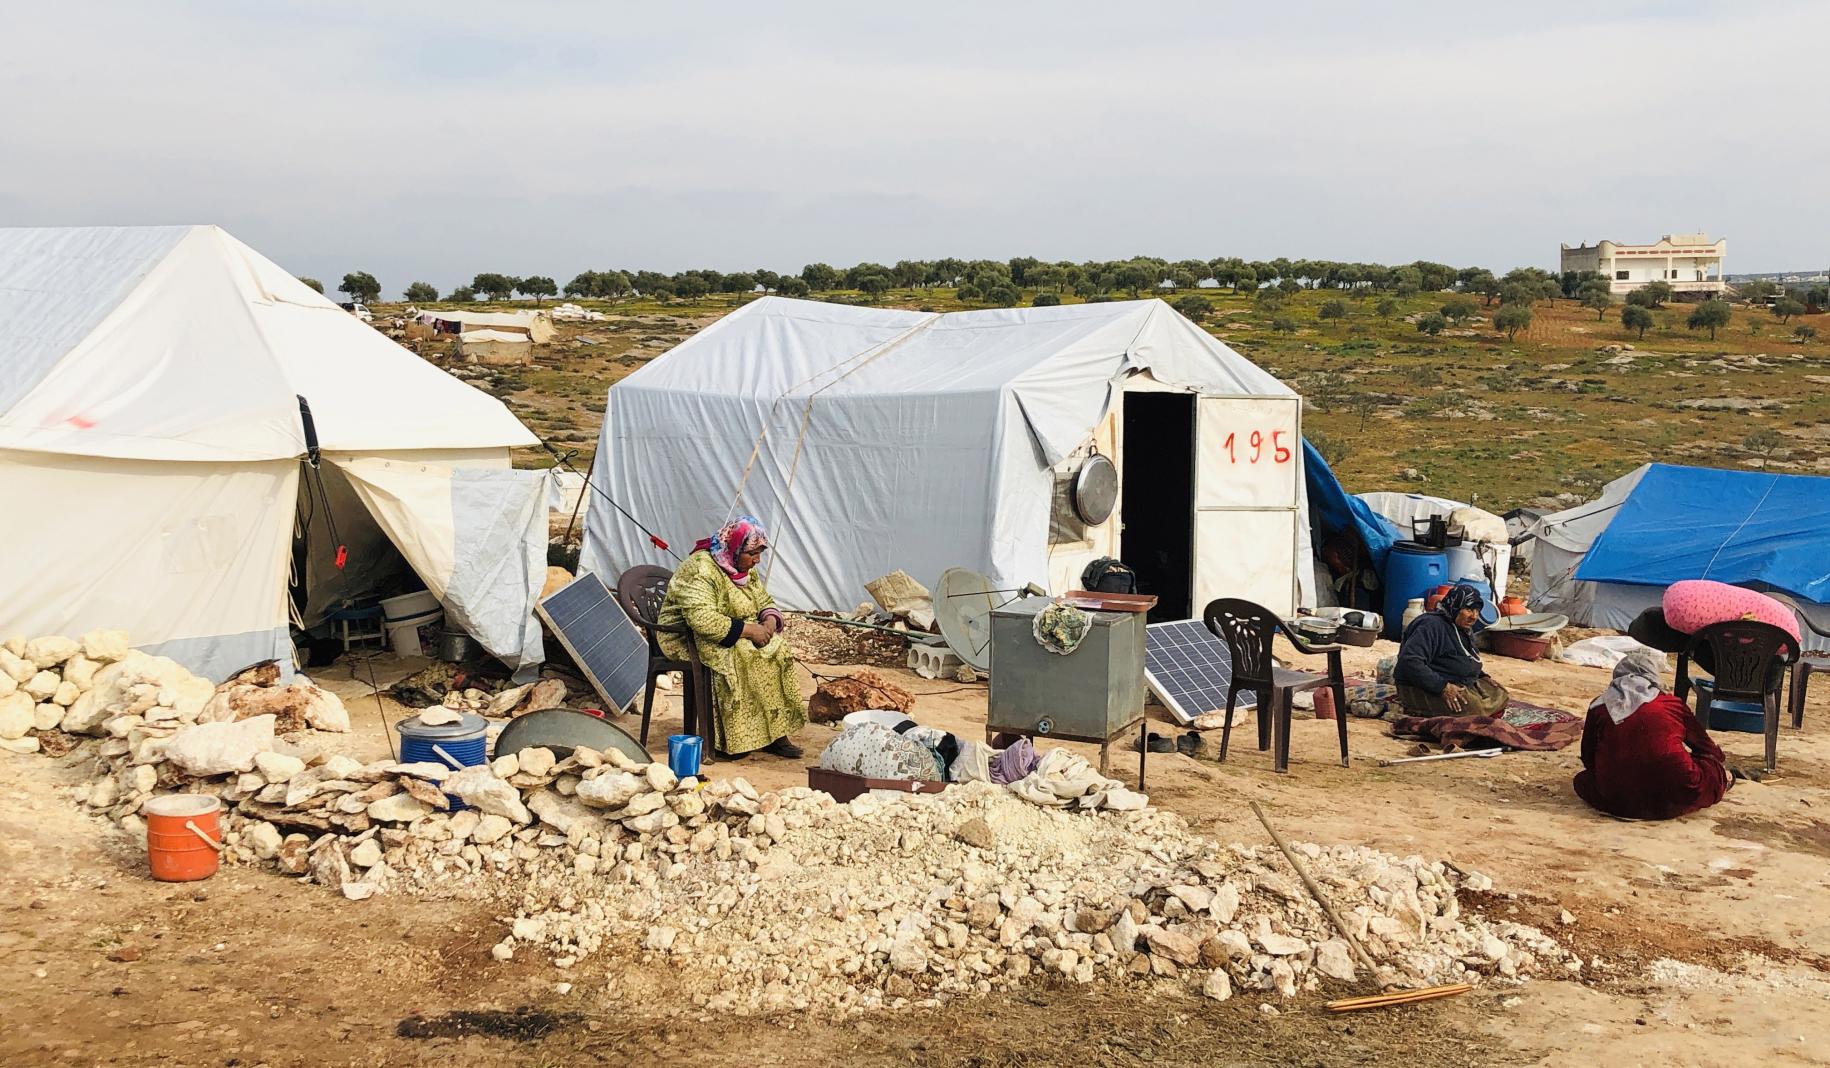 Los desplazados se sientan fuera de sus tiendas de campaña en el campamento de desplazados internos de Harbonosh.